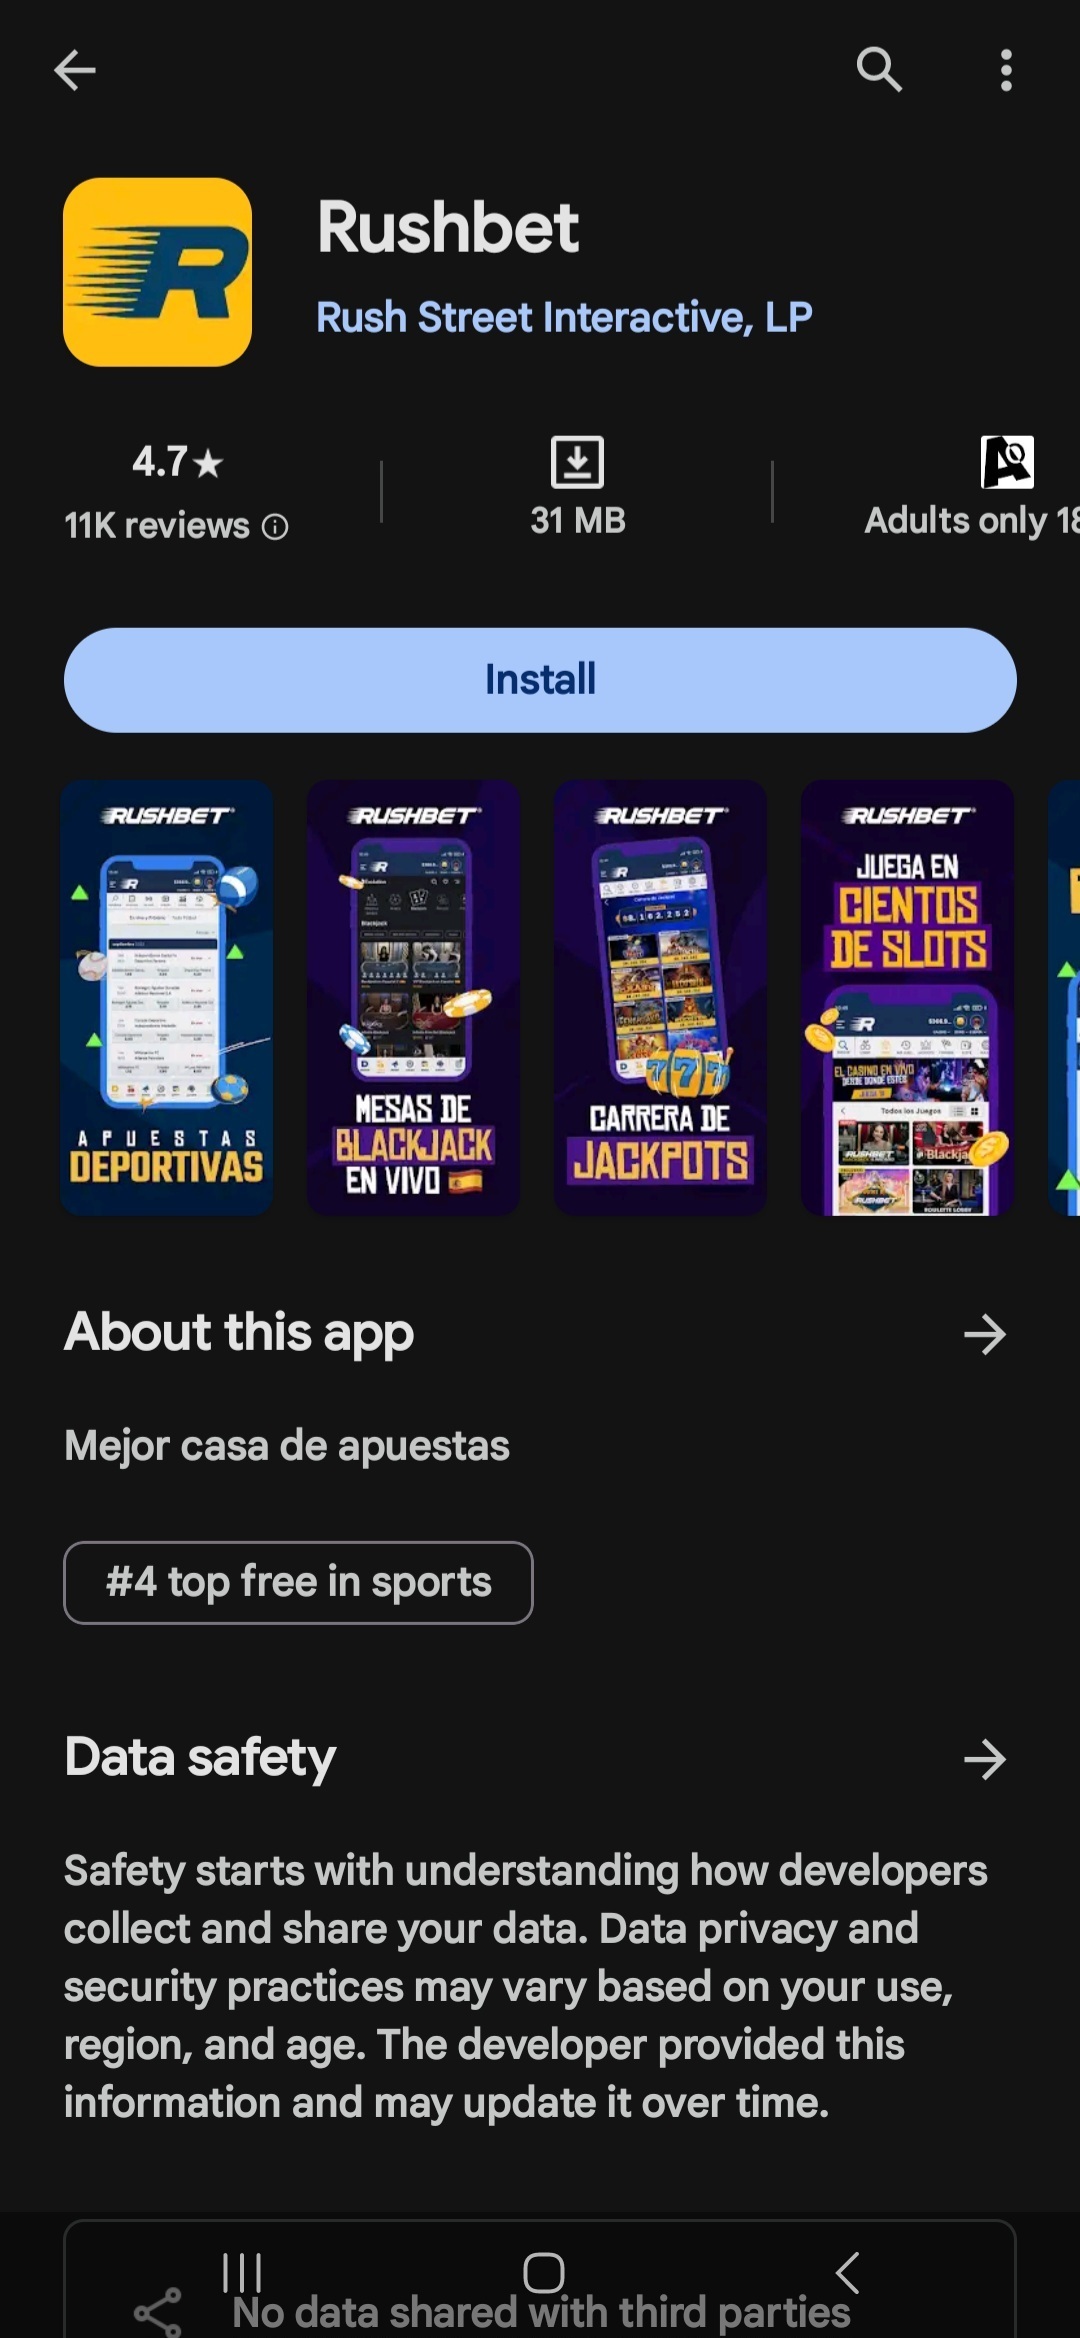 Página de aplicación móvil de Rushbet Colombia en Google Play Store (versión Android)